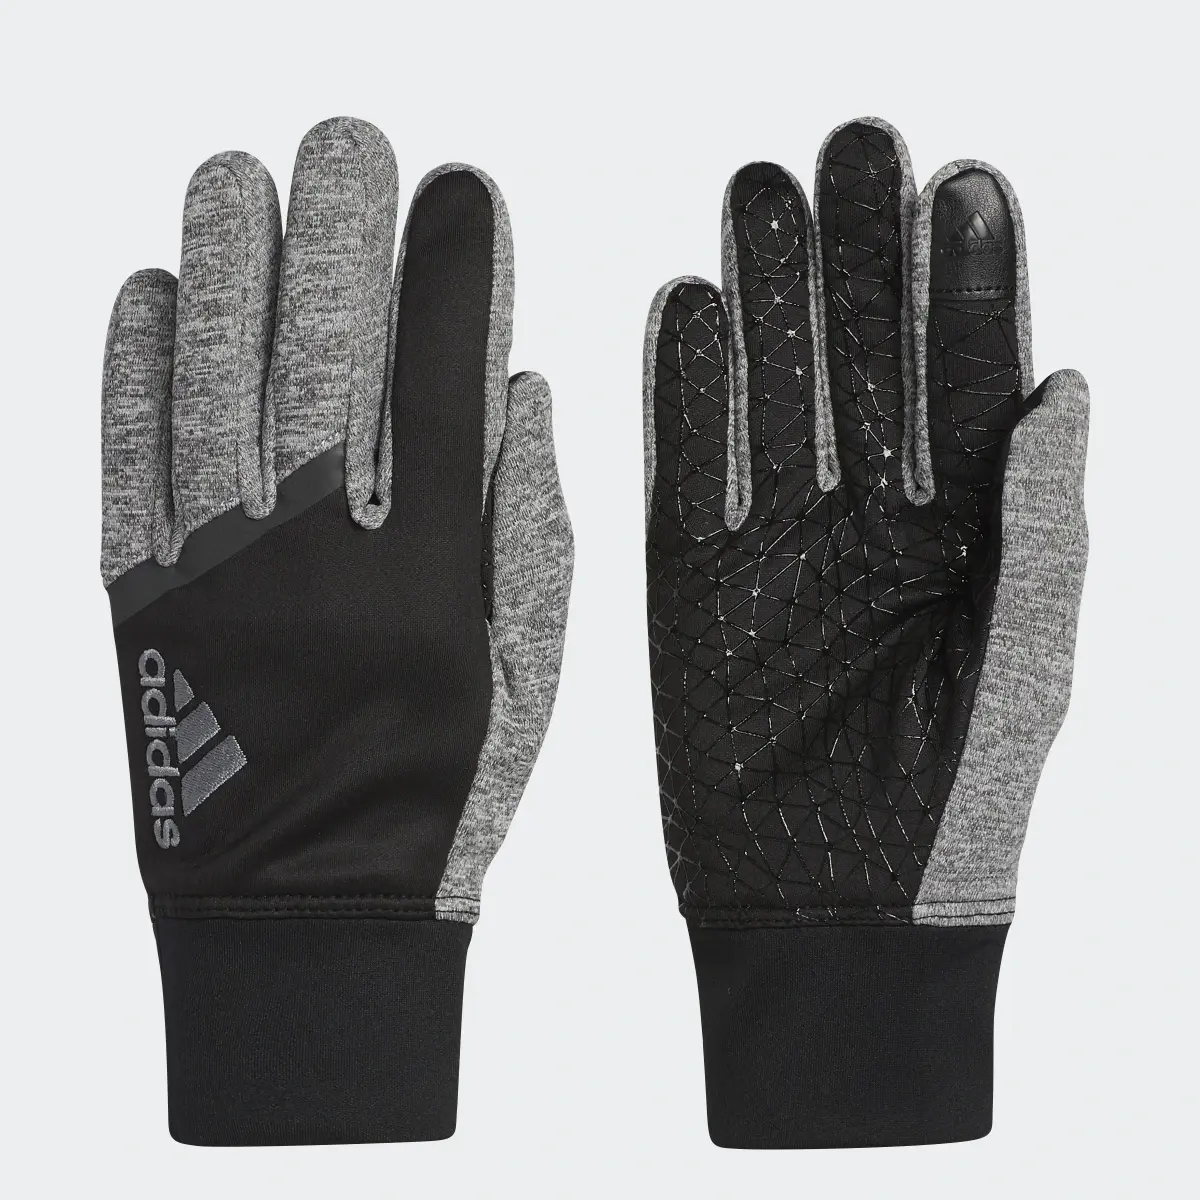 Adidas Go Gloves. 1